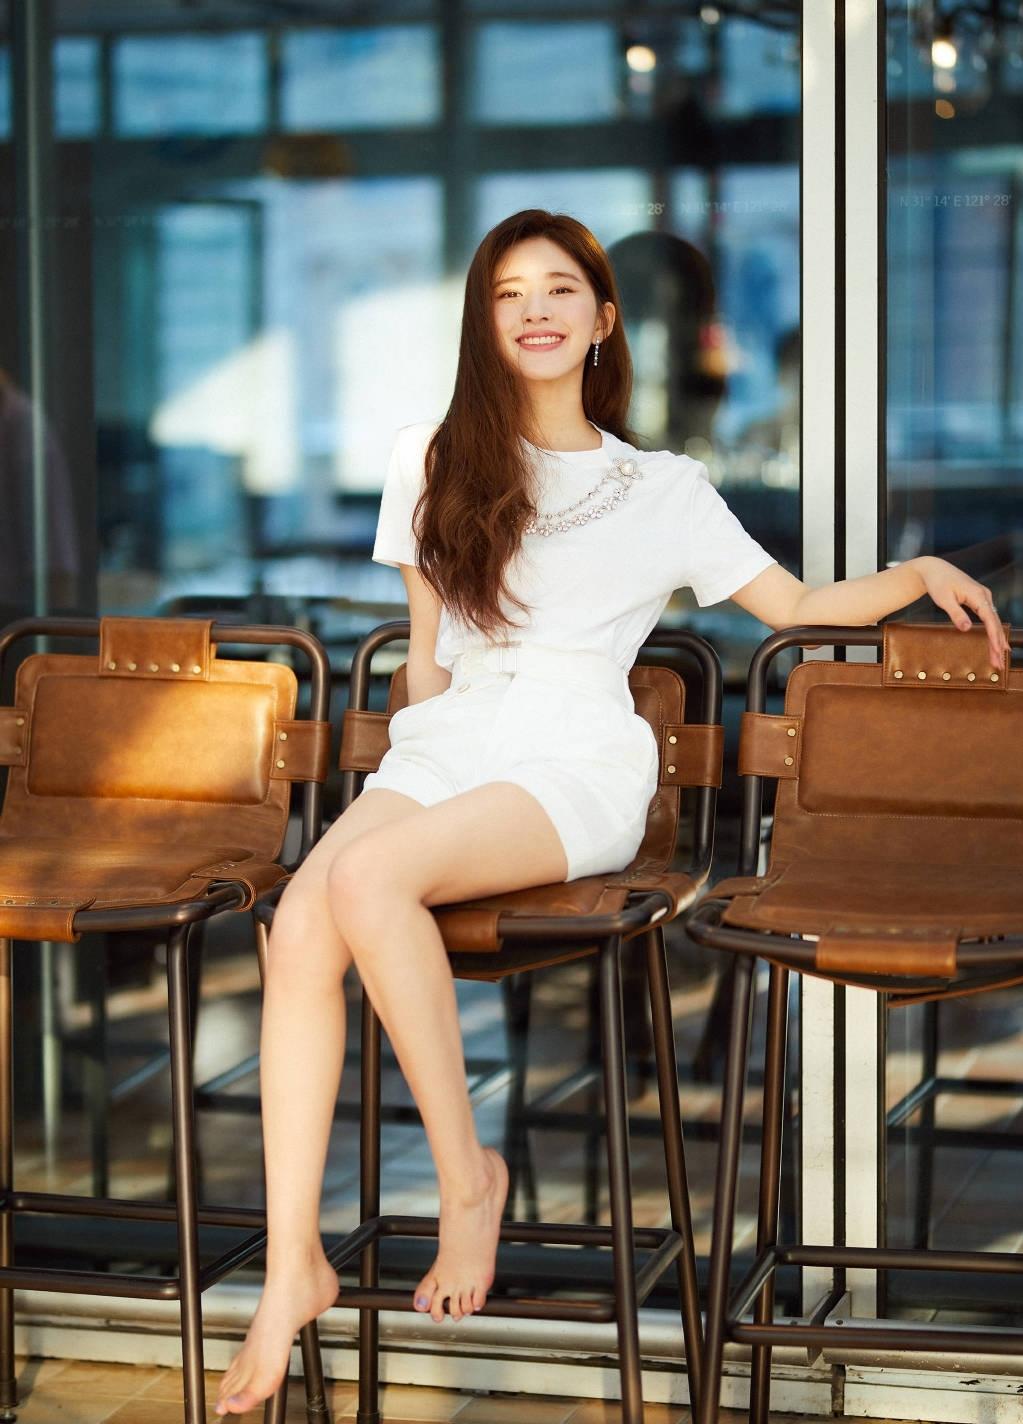 22岁赵露思太甜了,穿白色t恤配短裤,今天是不一样的心动女孩